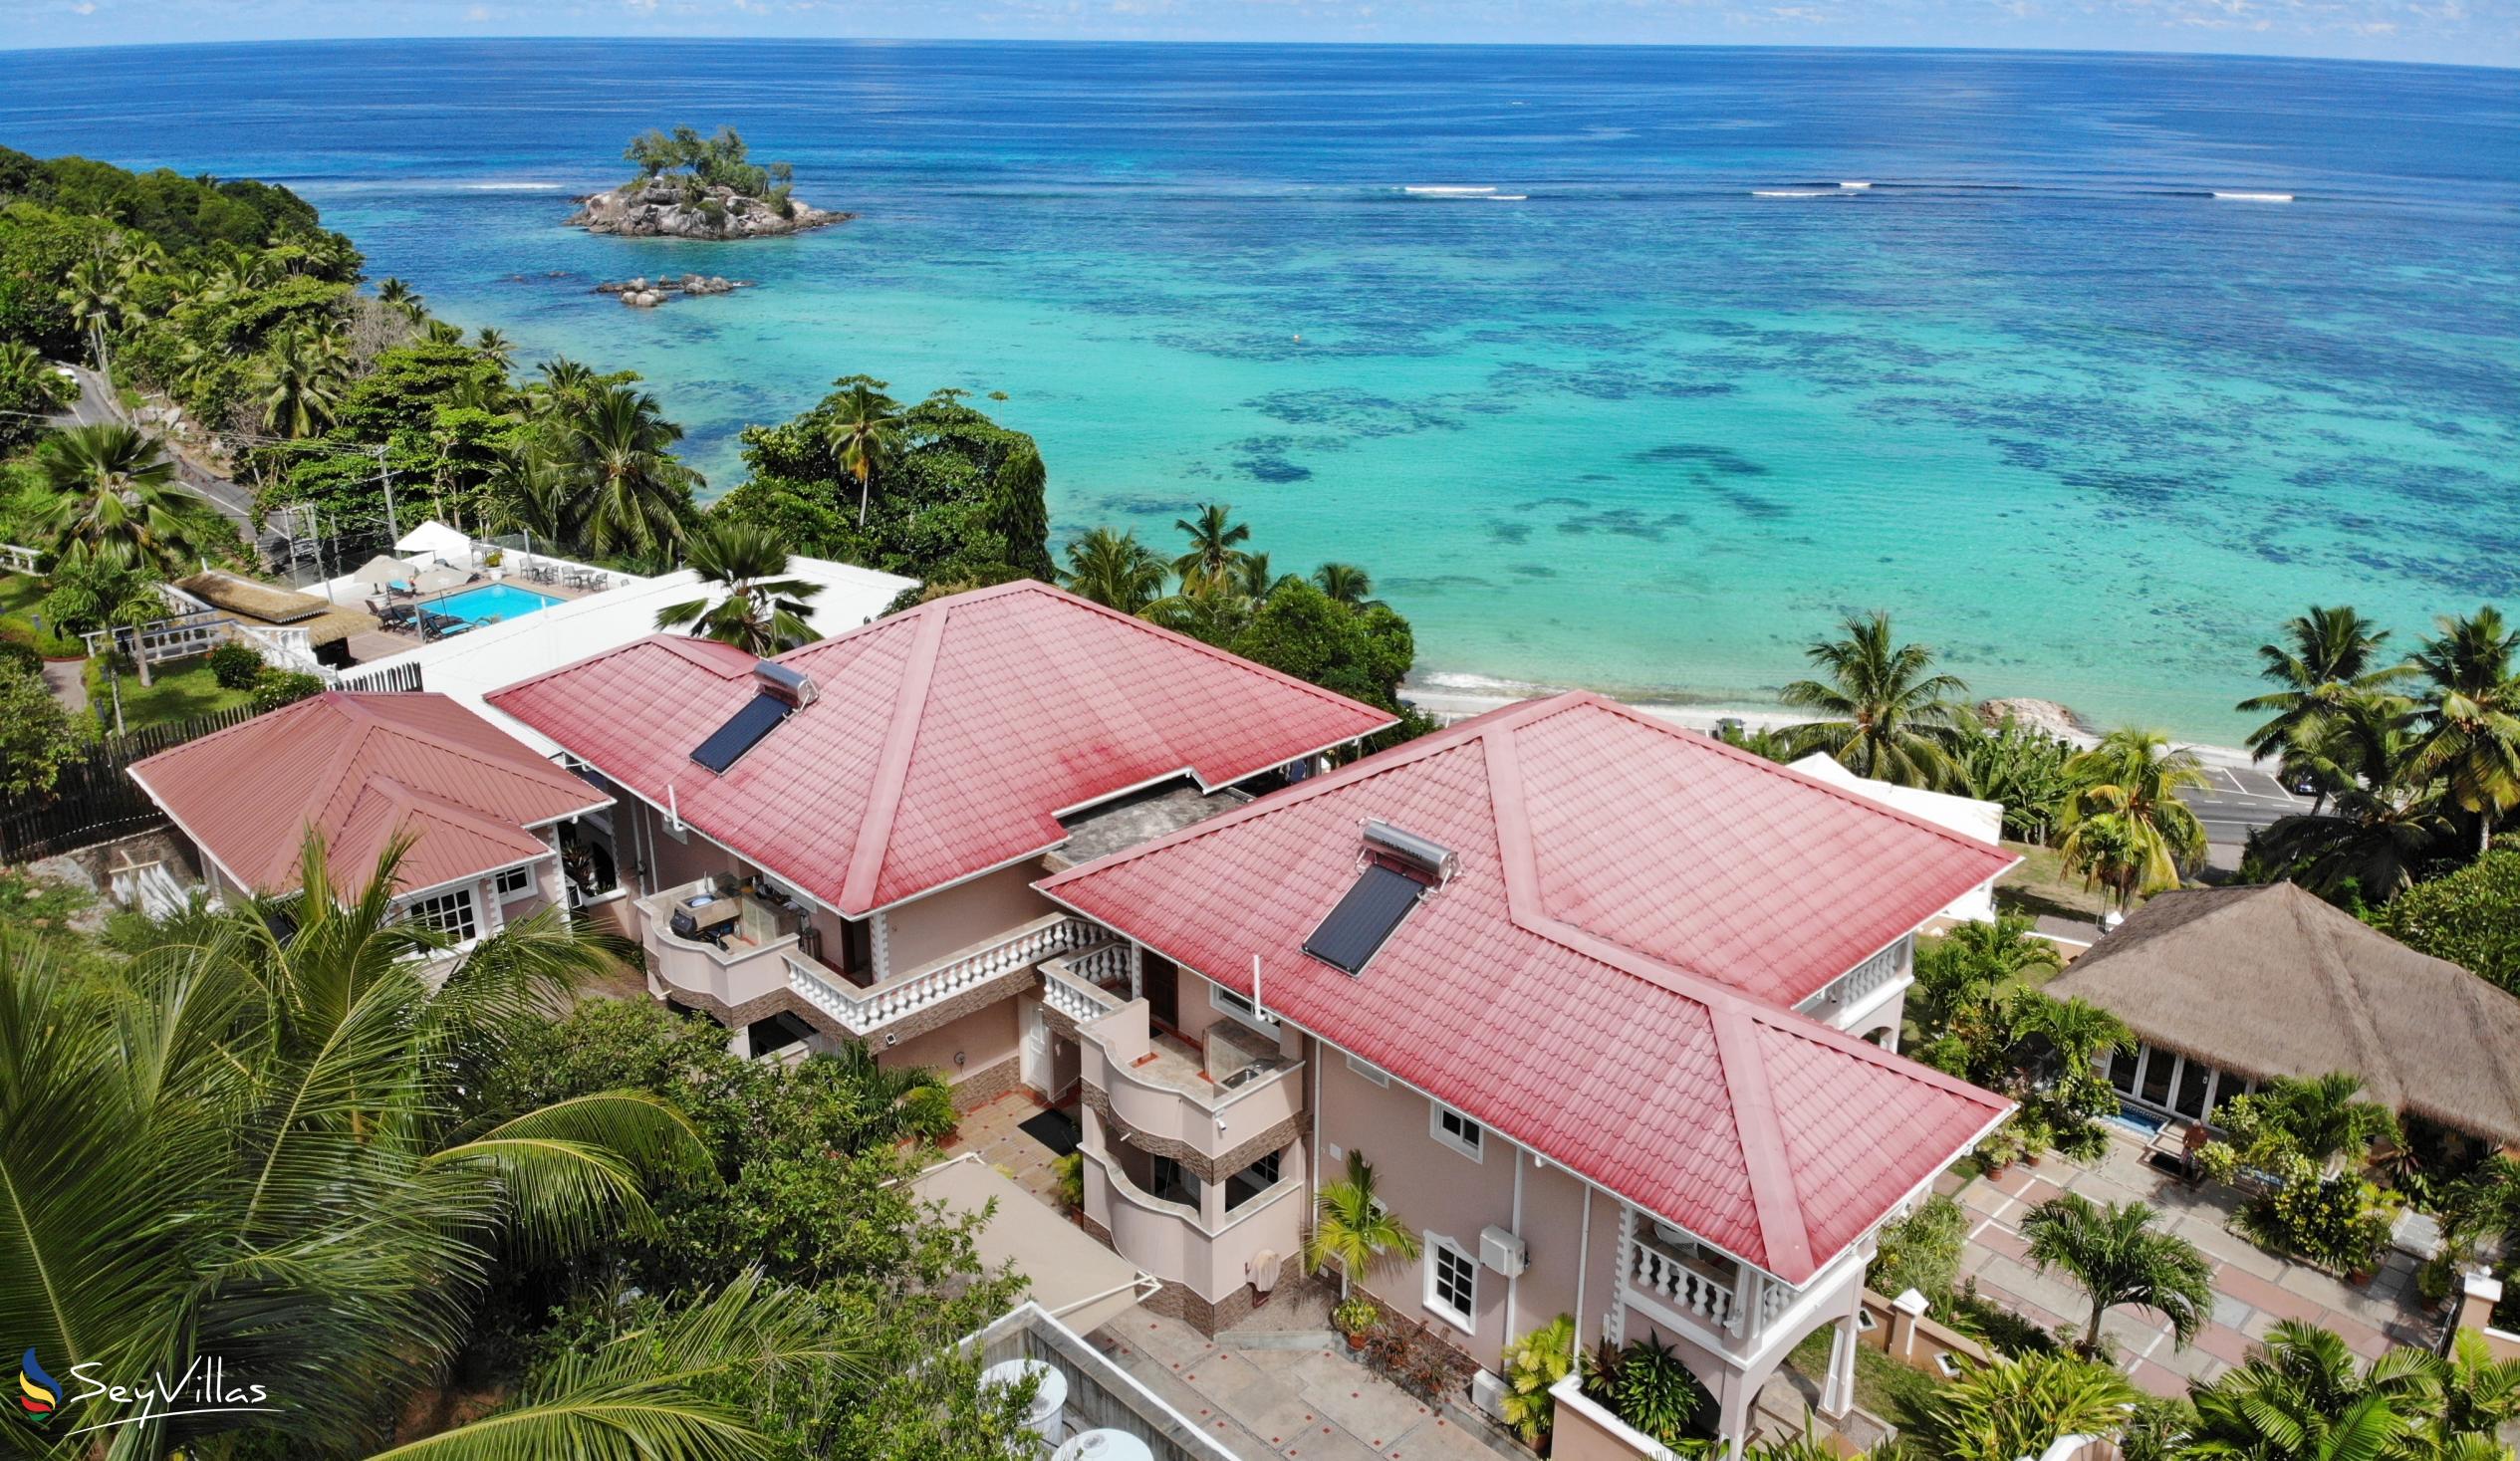 Photo 1: Au Fond de Mer View - Outdoor area - Mahé (Seychelles)